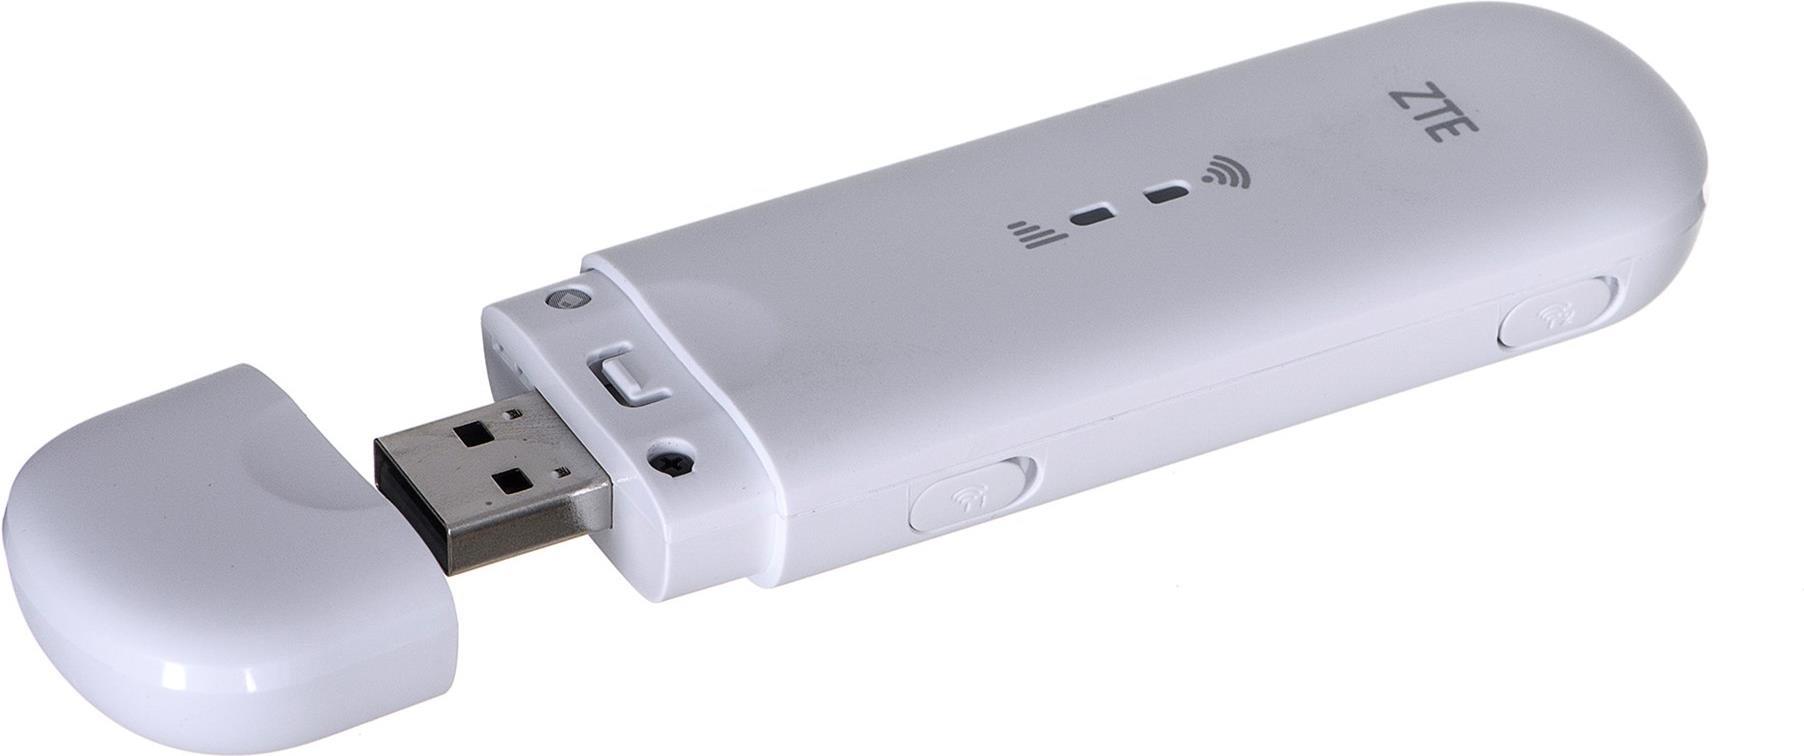 ZTE MF79N Wingle CAT4 4G LTE WLAN-USB-Modem Weiß (MF79N) von Zte